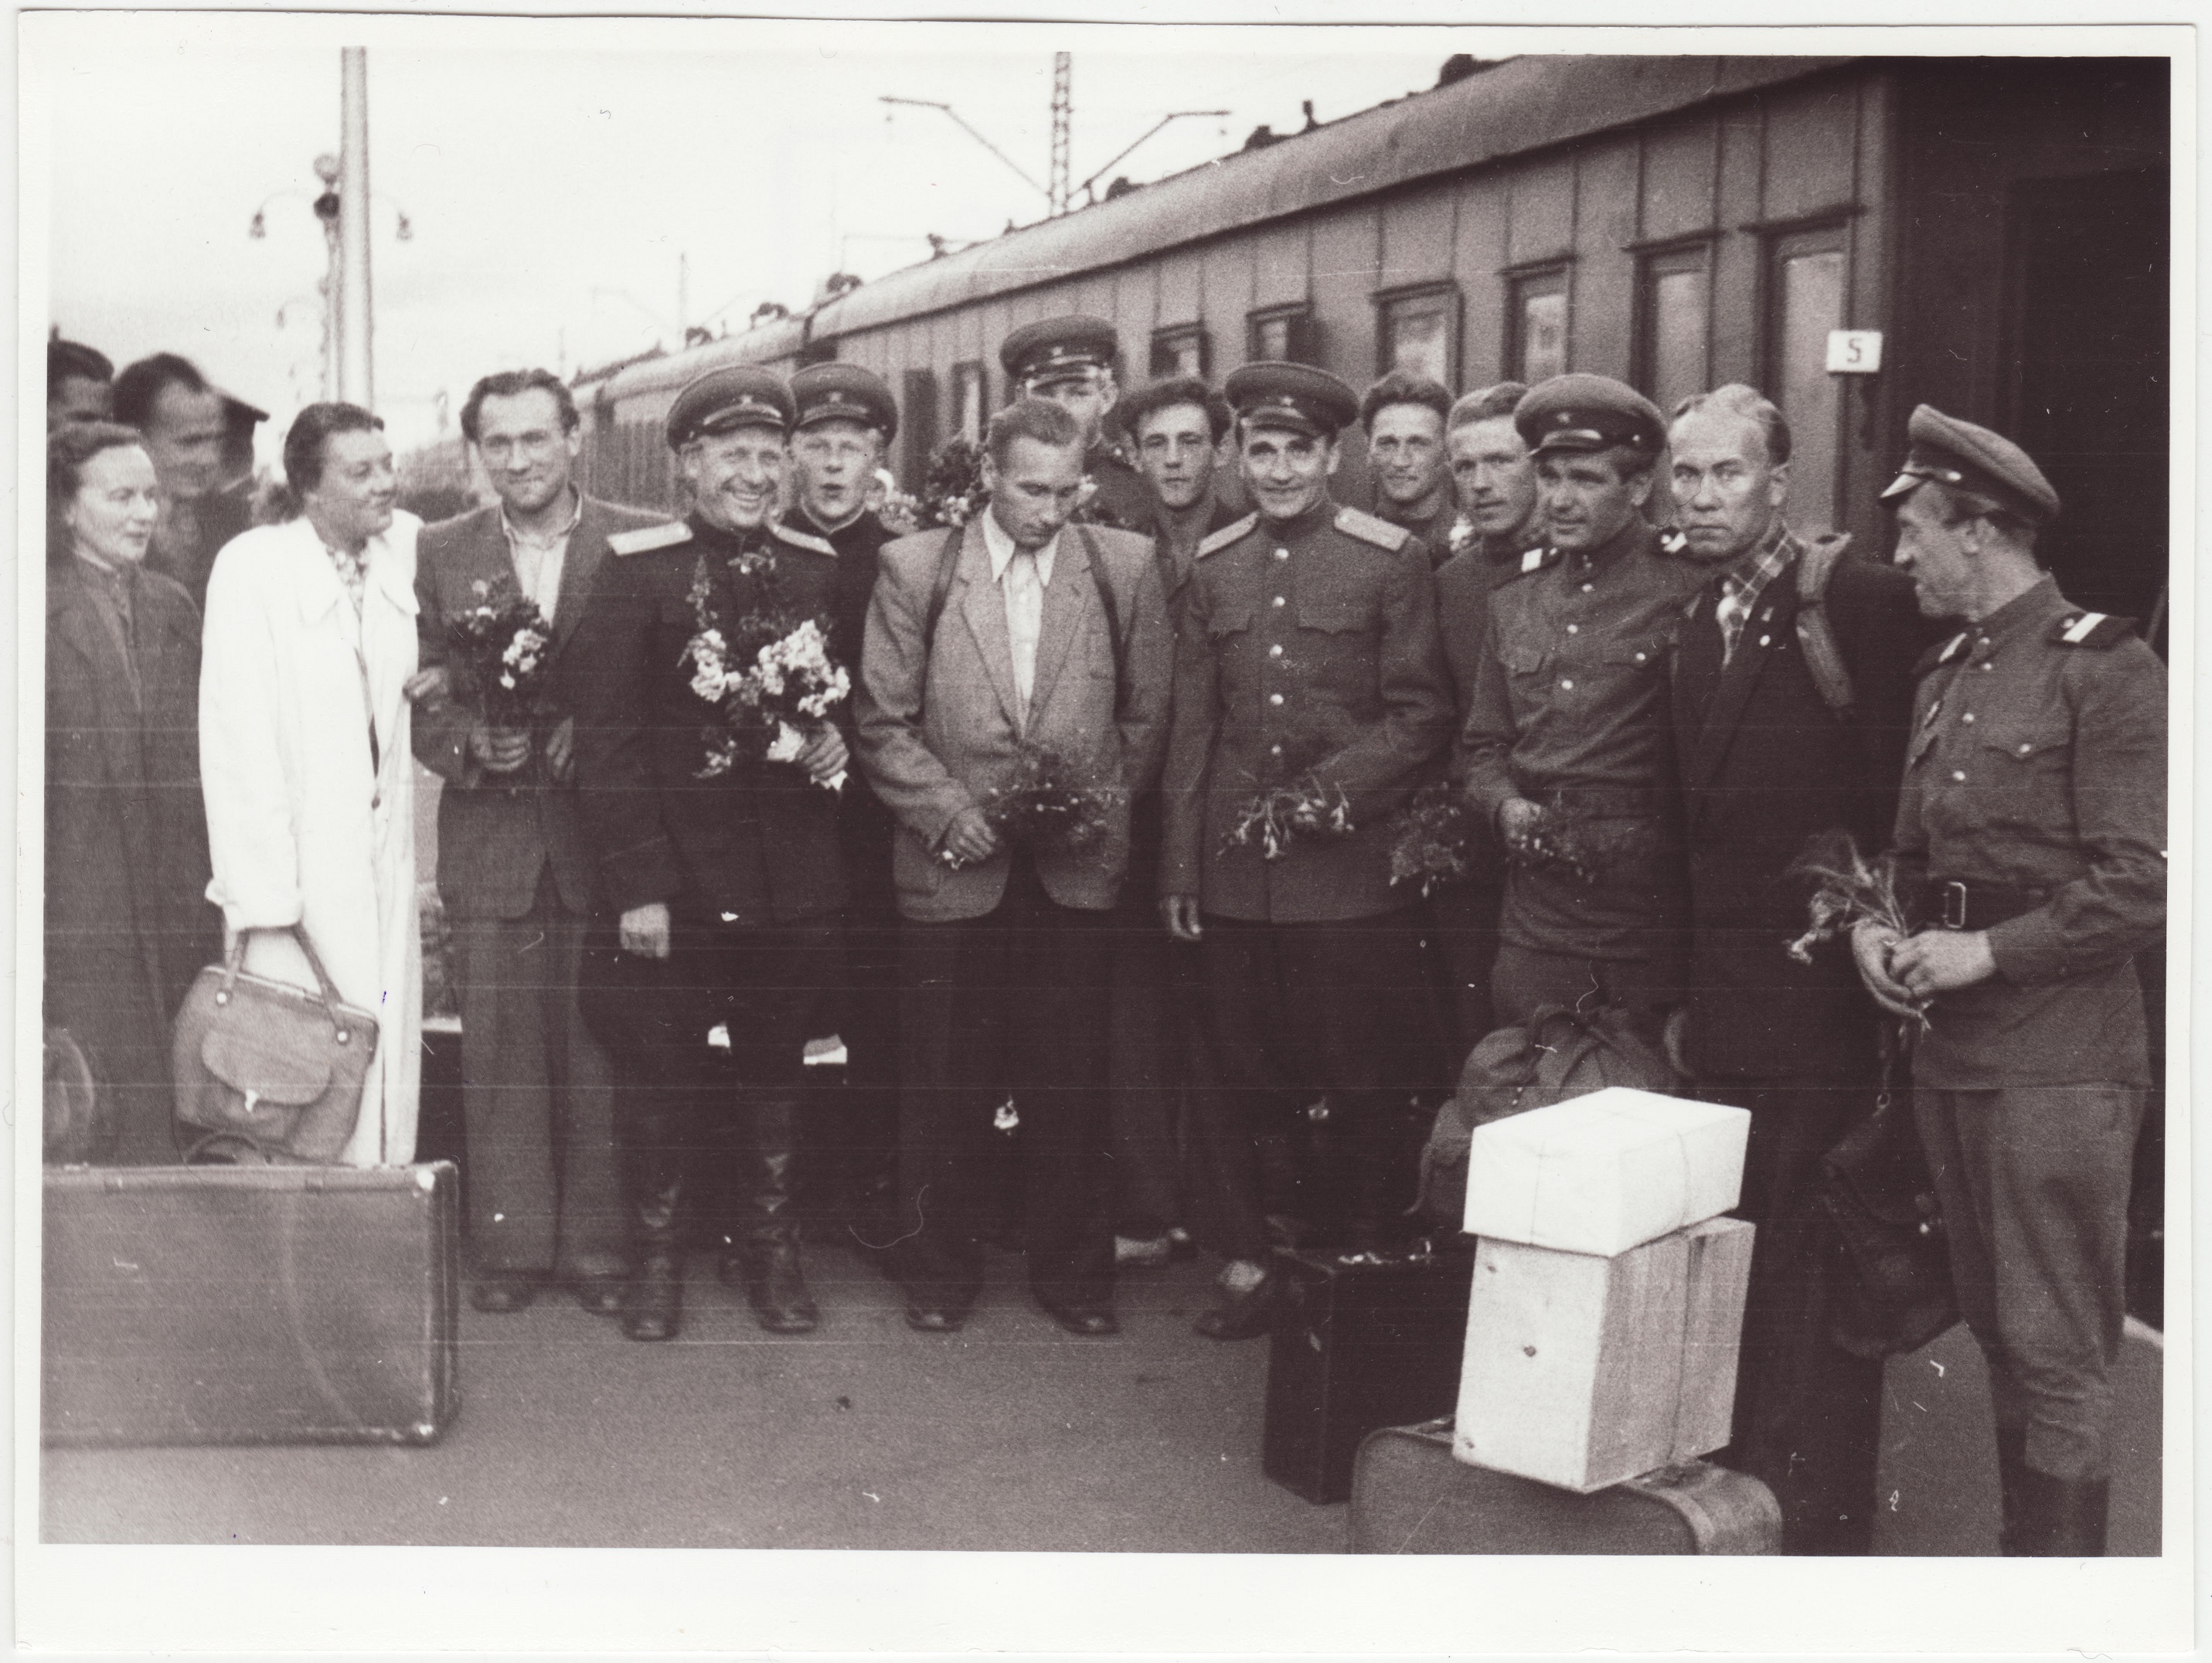 Grupifoto: üleliiduliselt tuletõrjespordivõistlustelt saabunud sportlased koos vasuvõtjatega Balti jaamas, 1955.a.